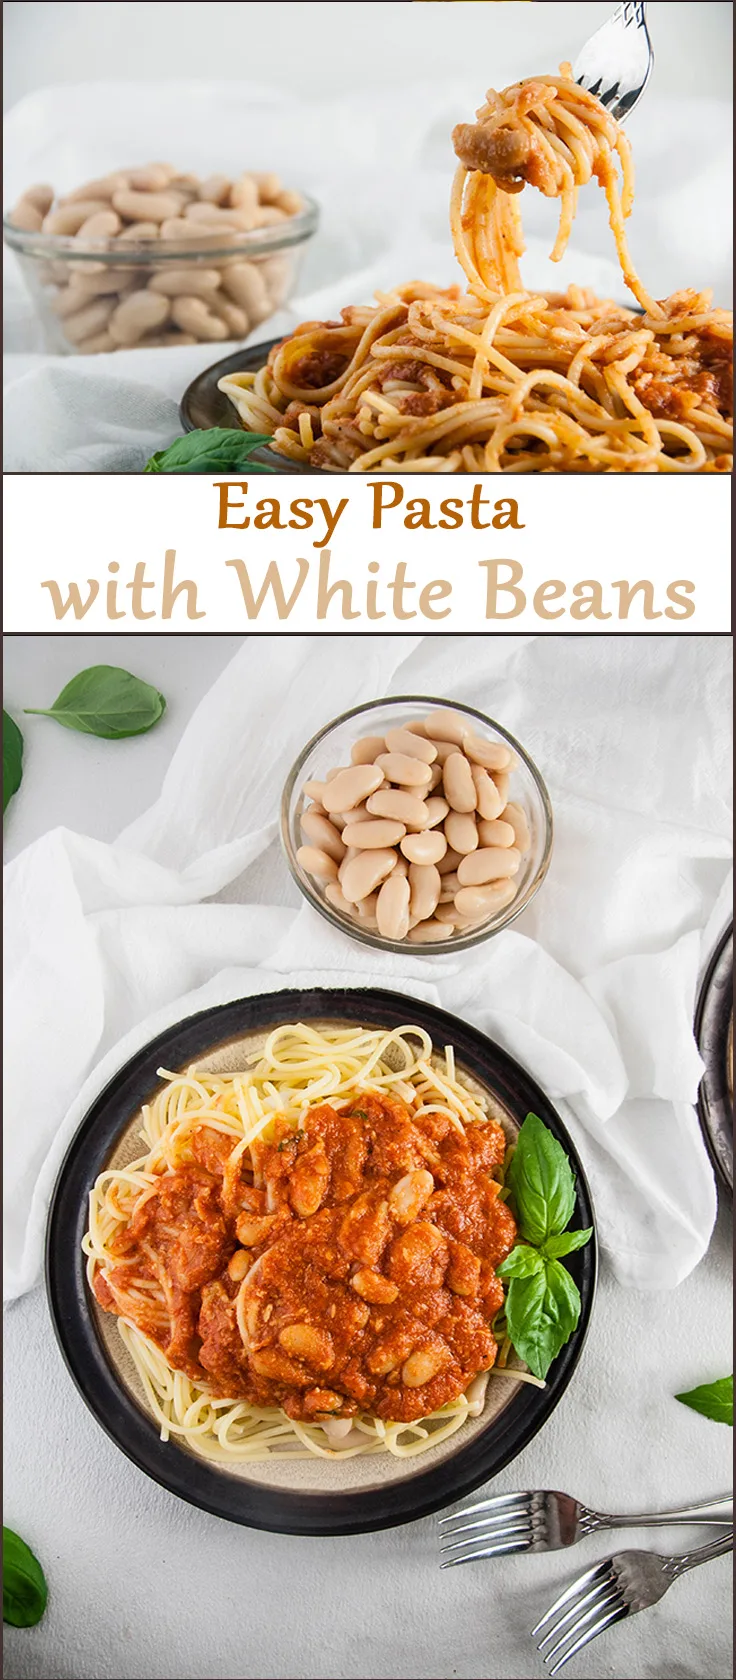 Easy Pasta with White Beans from www.SeasonedSprinkles.com